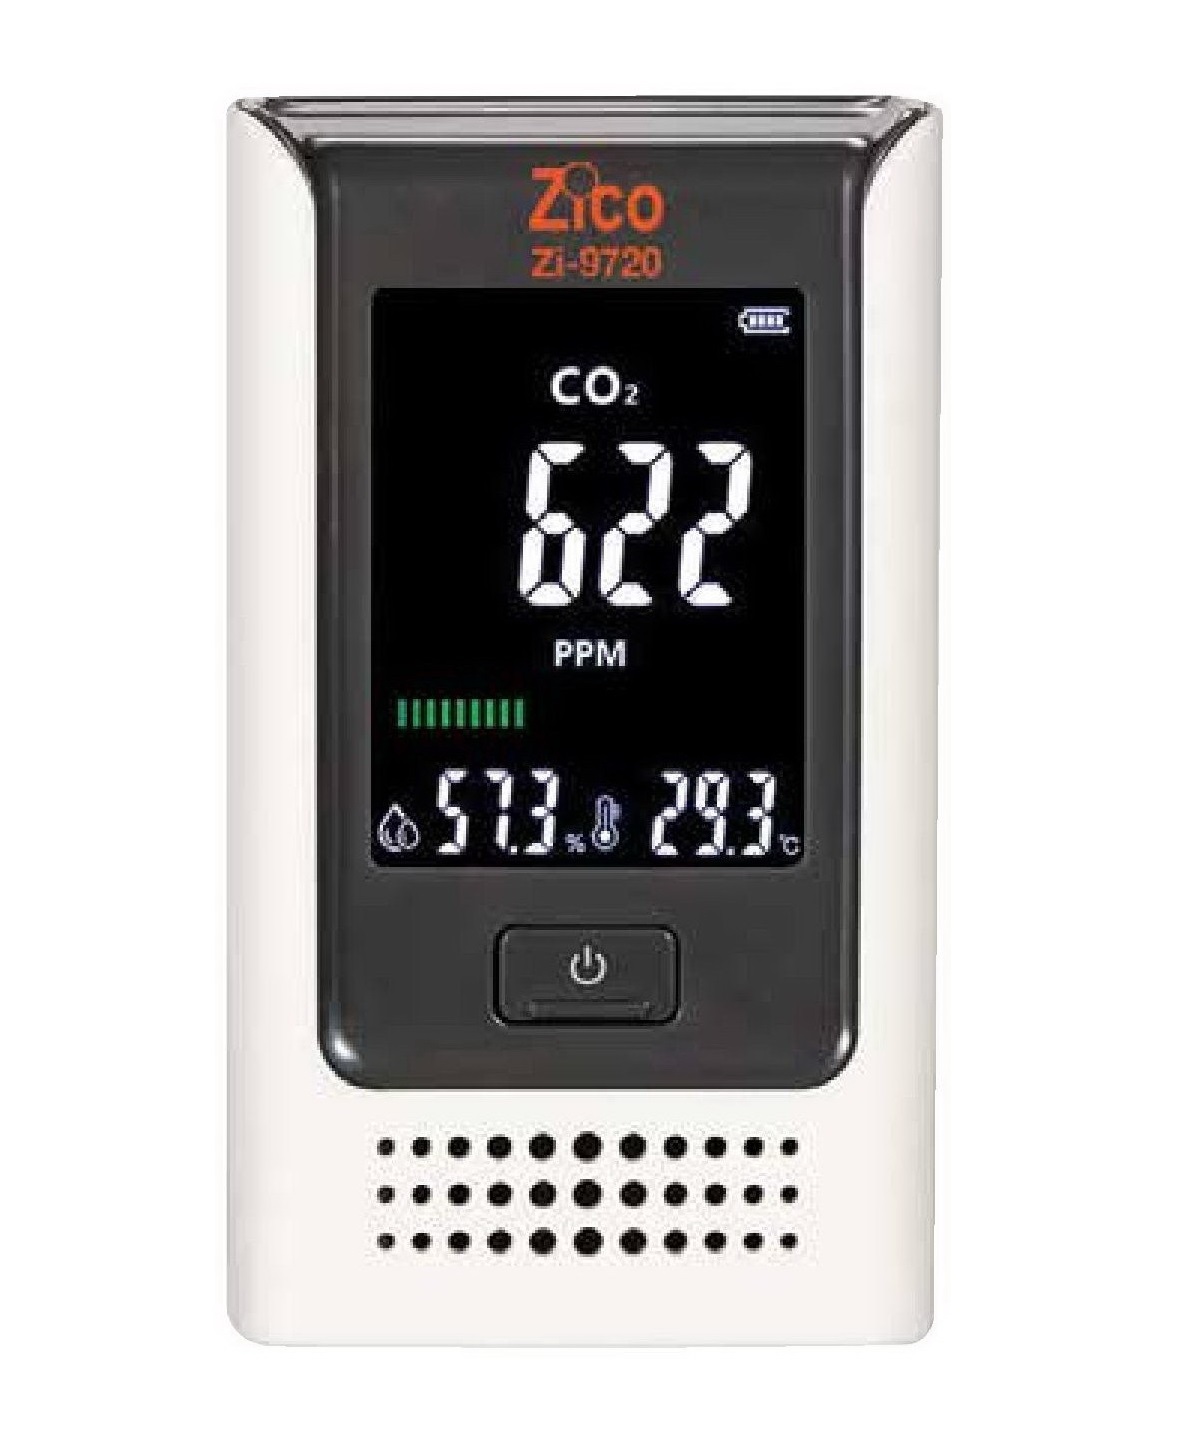      ZI-9720 CO2